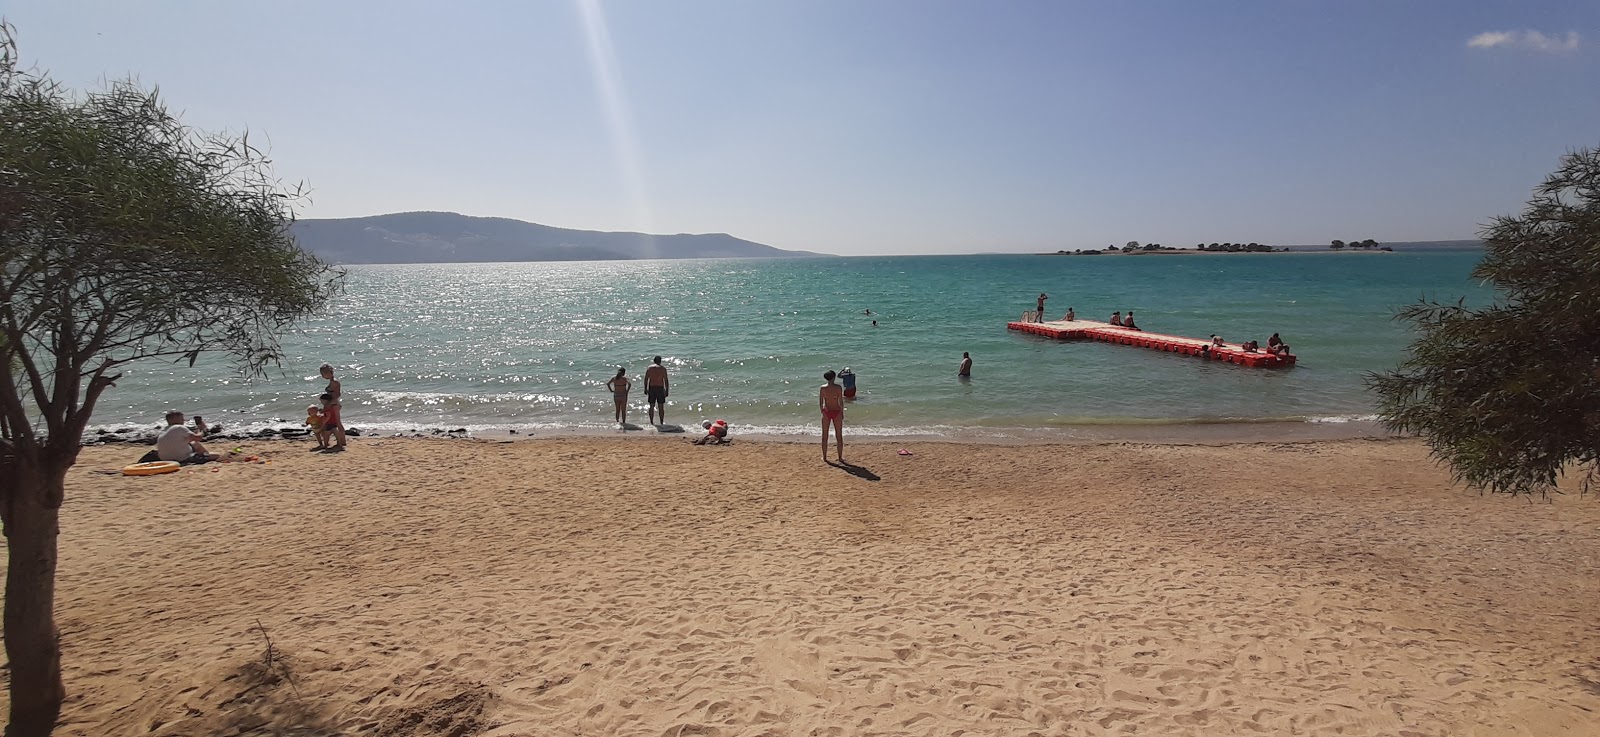 Kerem beach II'in fotoğrafı turkuaz su yüzey ile